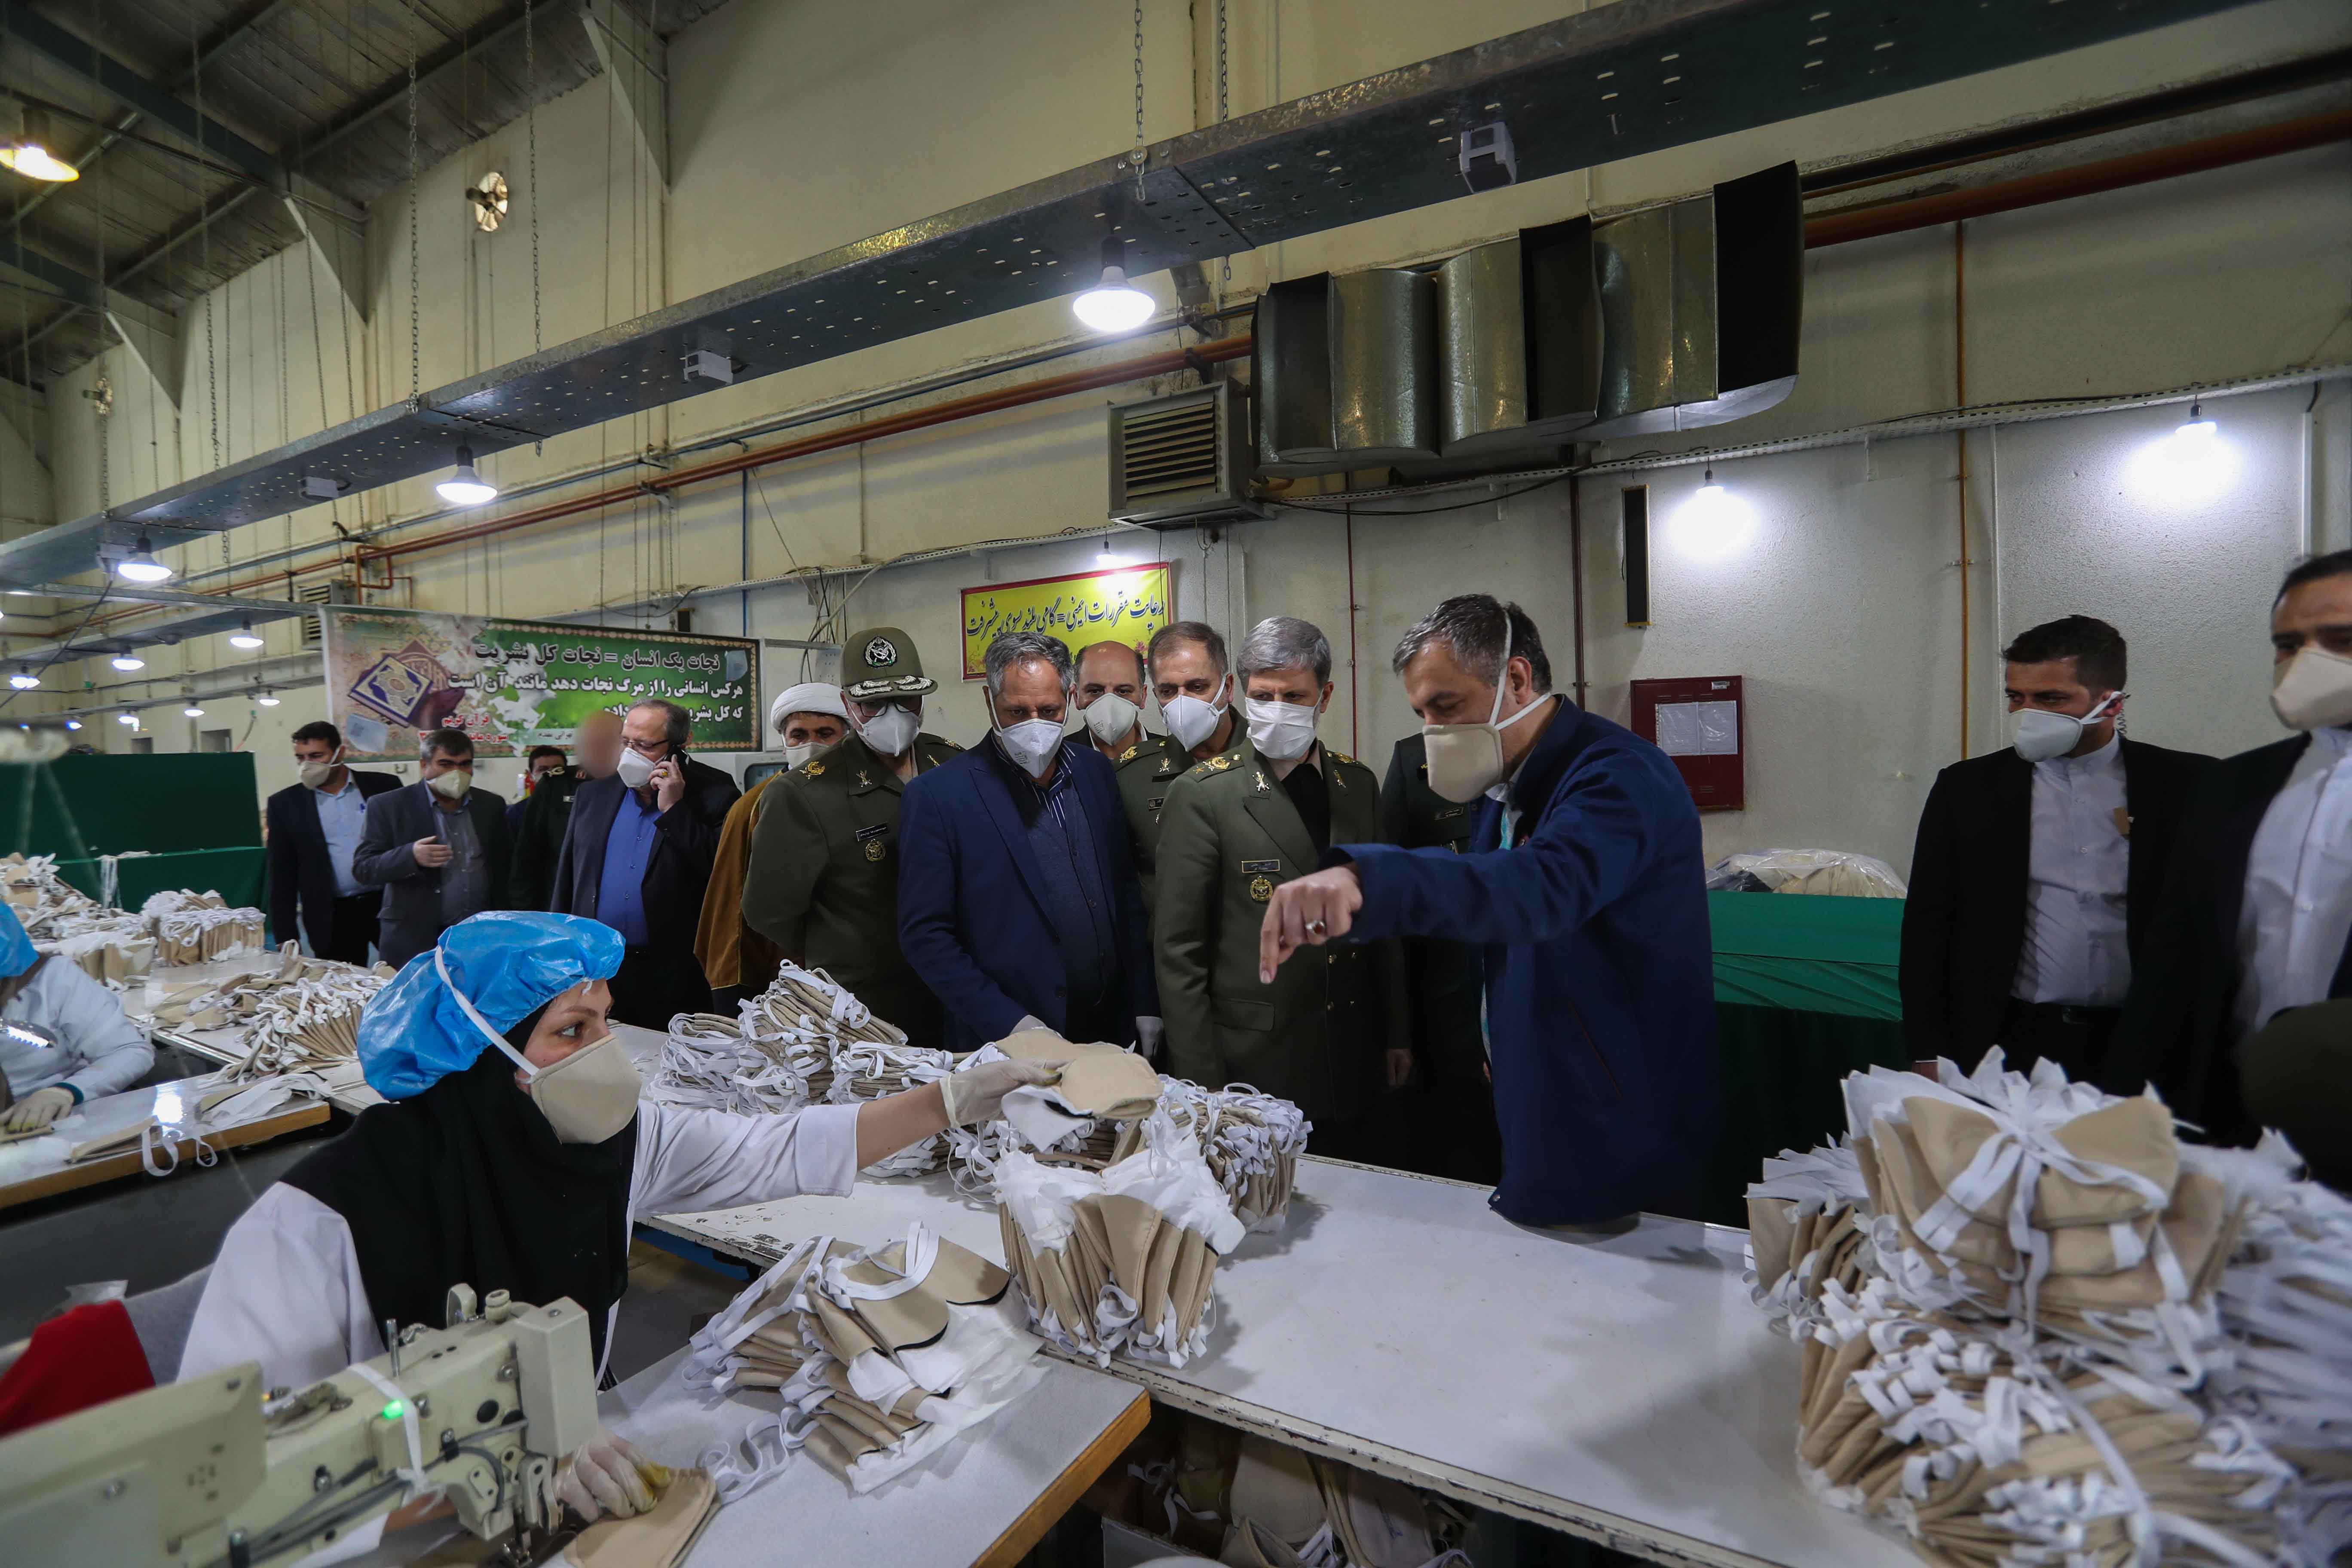 تولید ماسک های فیلتردار پیشرفته توسط متخصصان صنعت دفاعی ایران